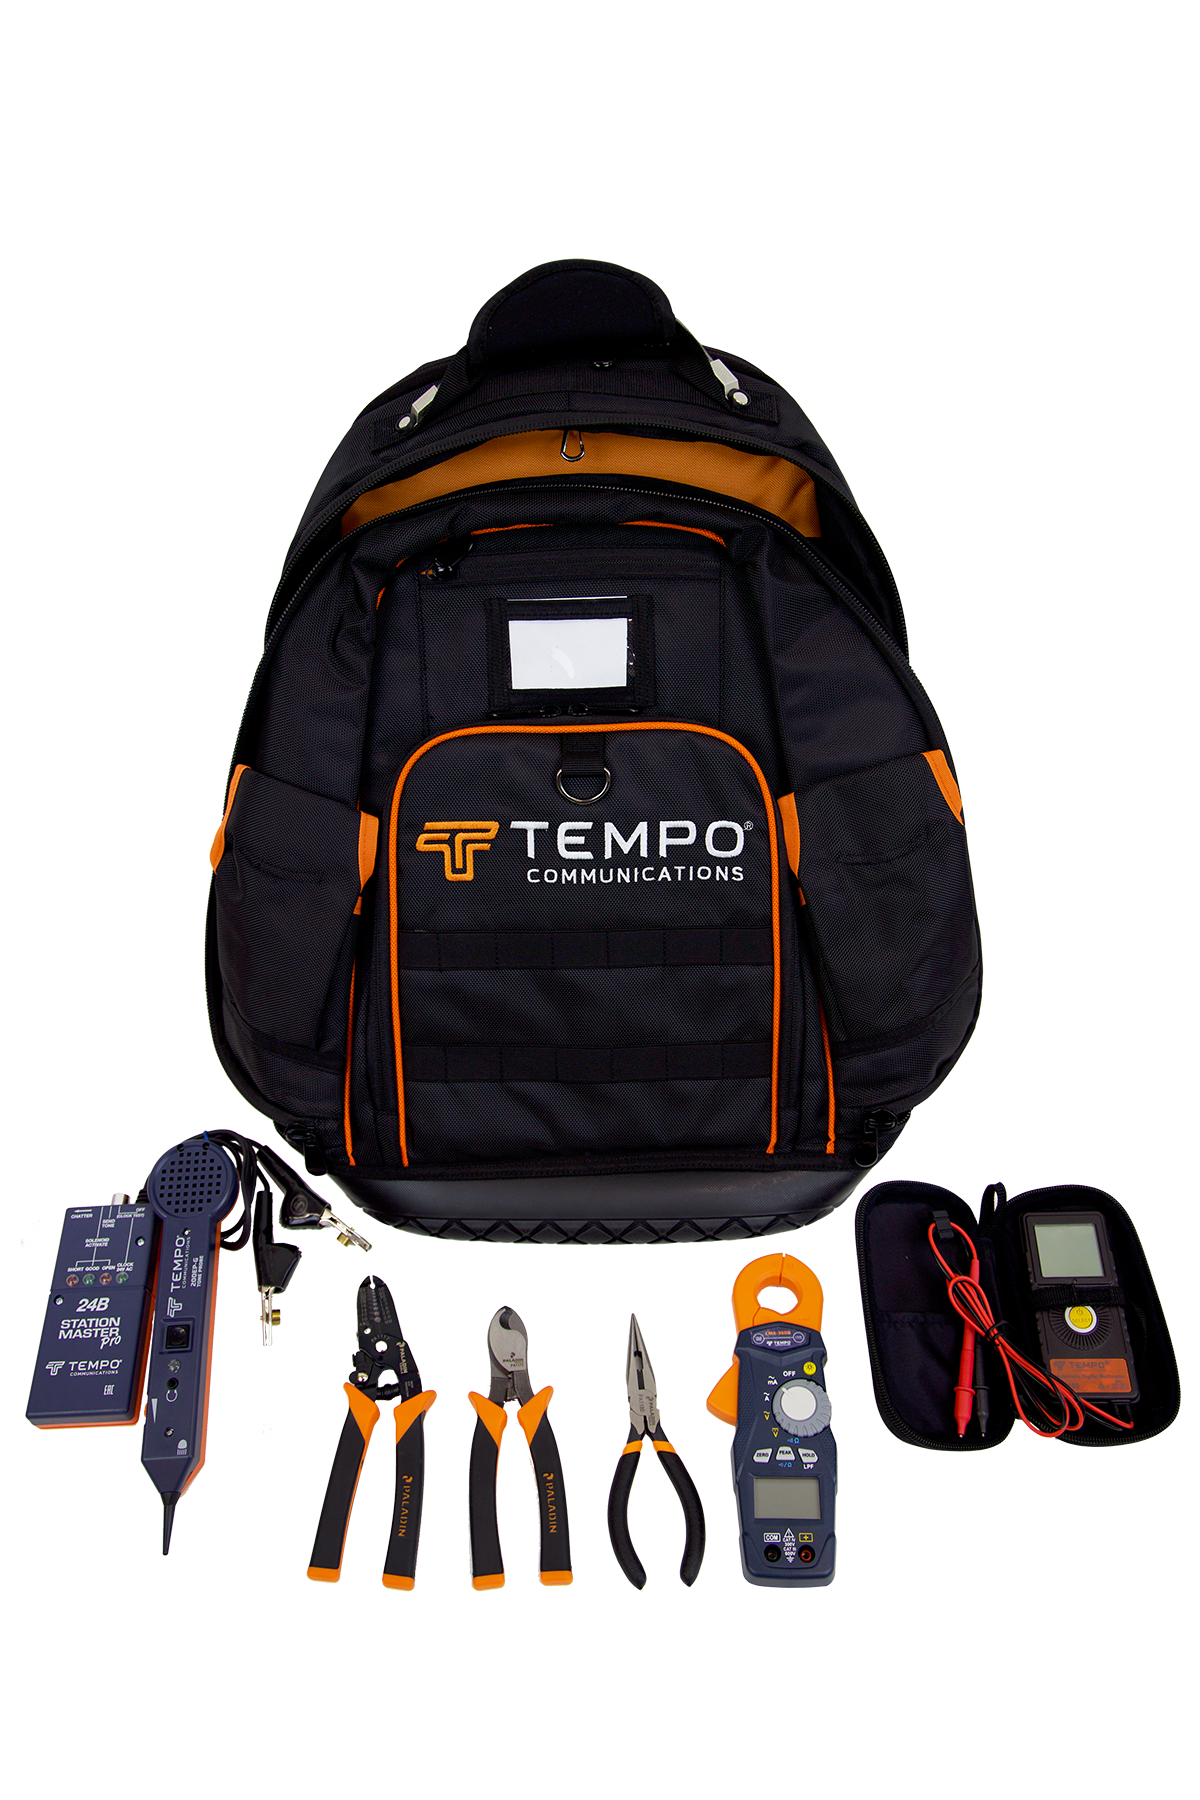 ITK Irrigation Specialist Tool Kit – Backpack